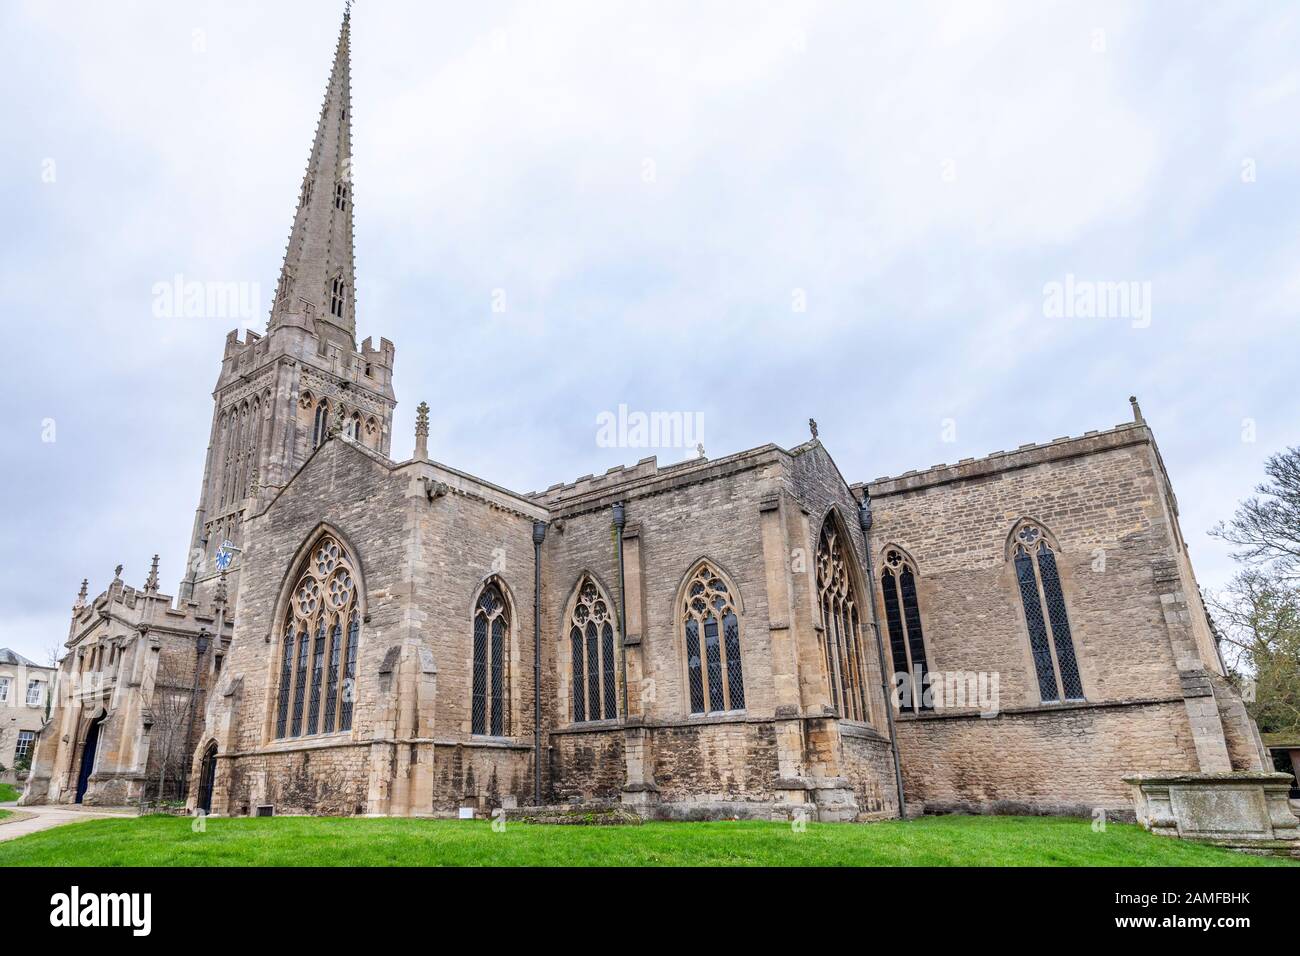 St Peter's Church Oundle, Oundle est une ville de marché sur la rivière Nene dans le Northamptonshire, Angleterre, Royaume-Uni. Banque D'Images